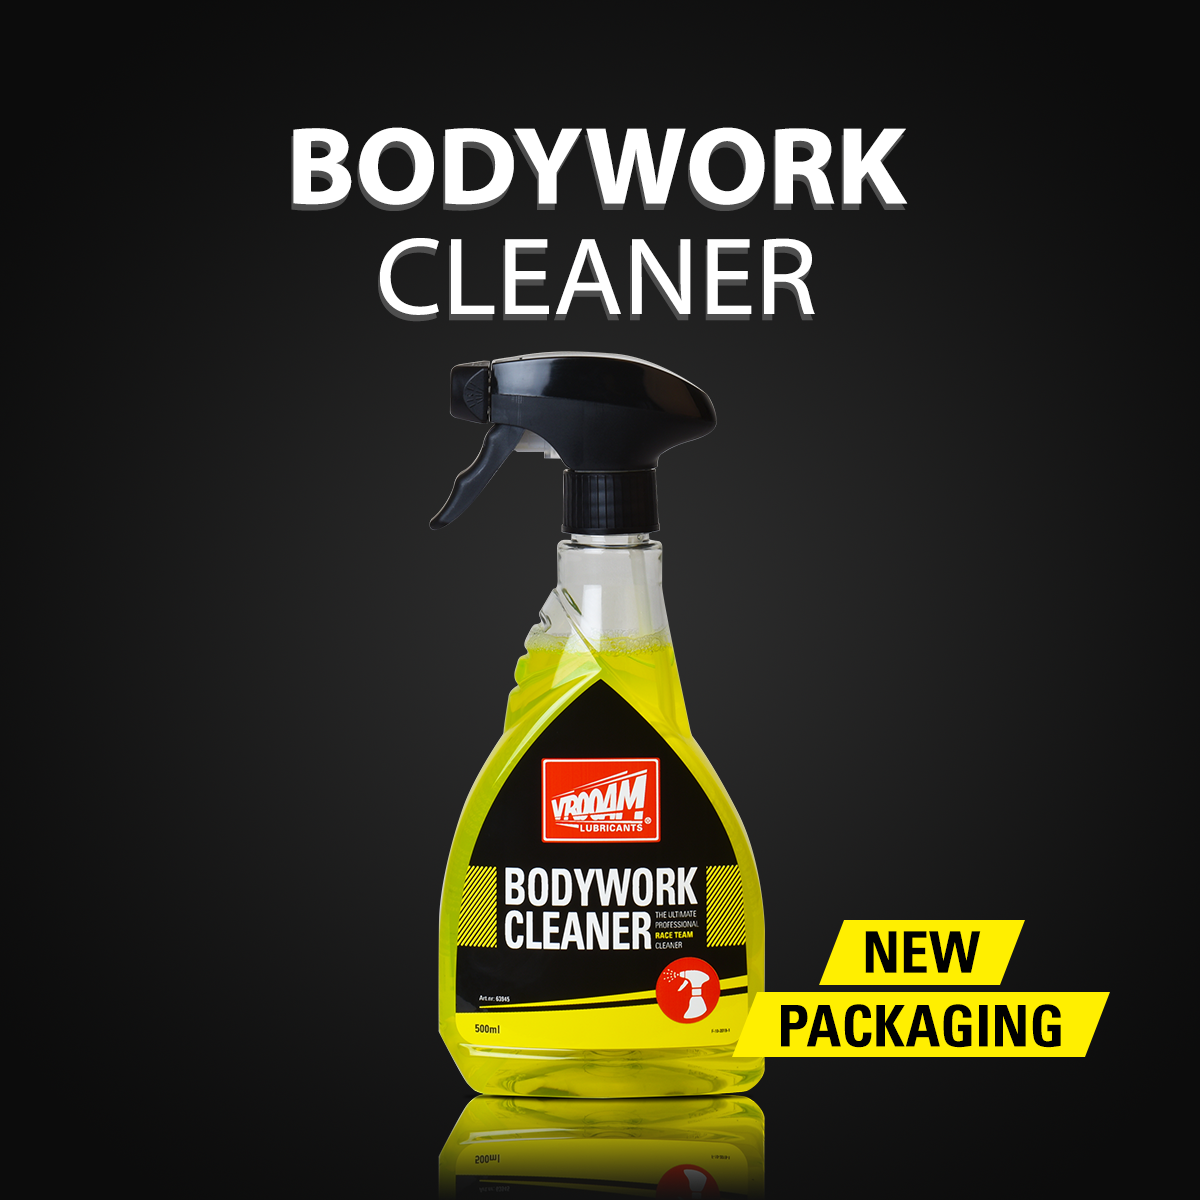 New packaging for VROOAM Bodywork Cleaner